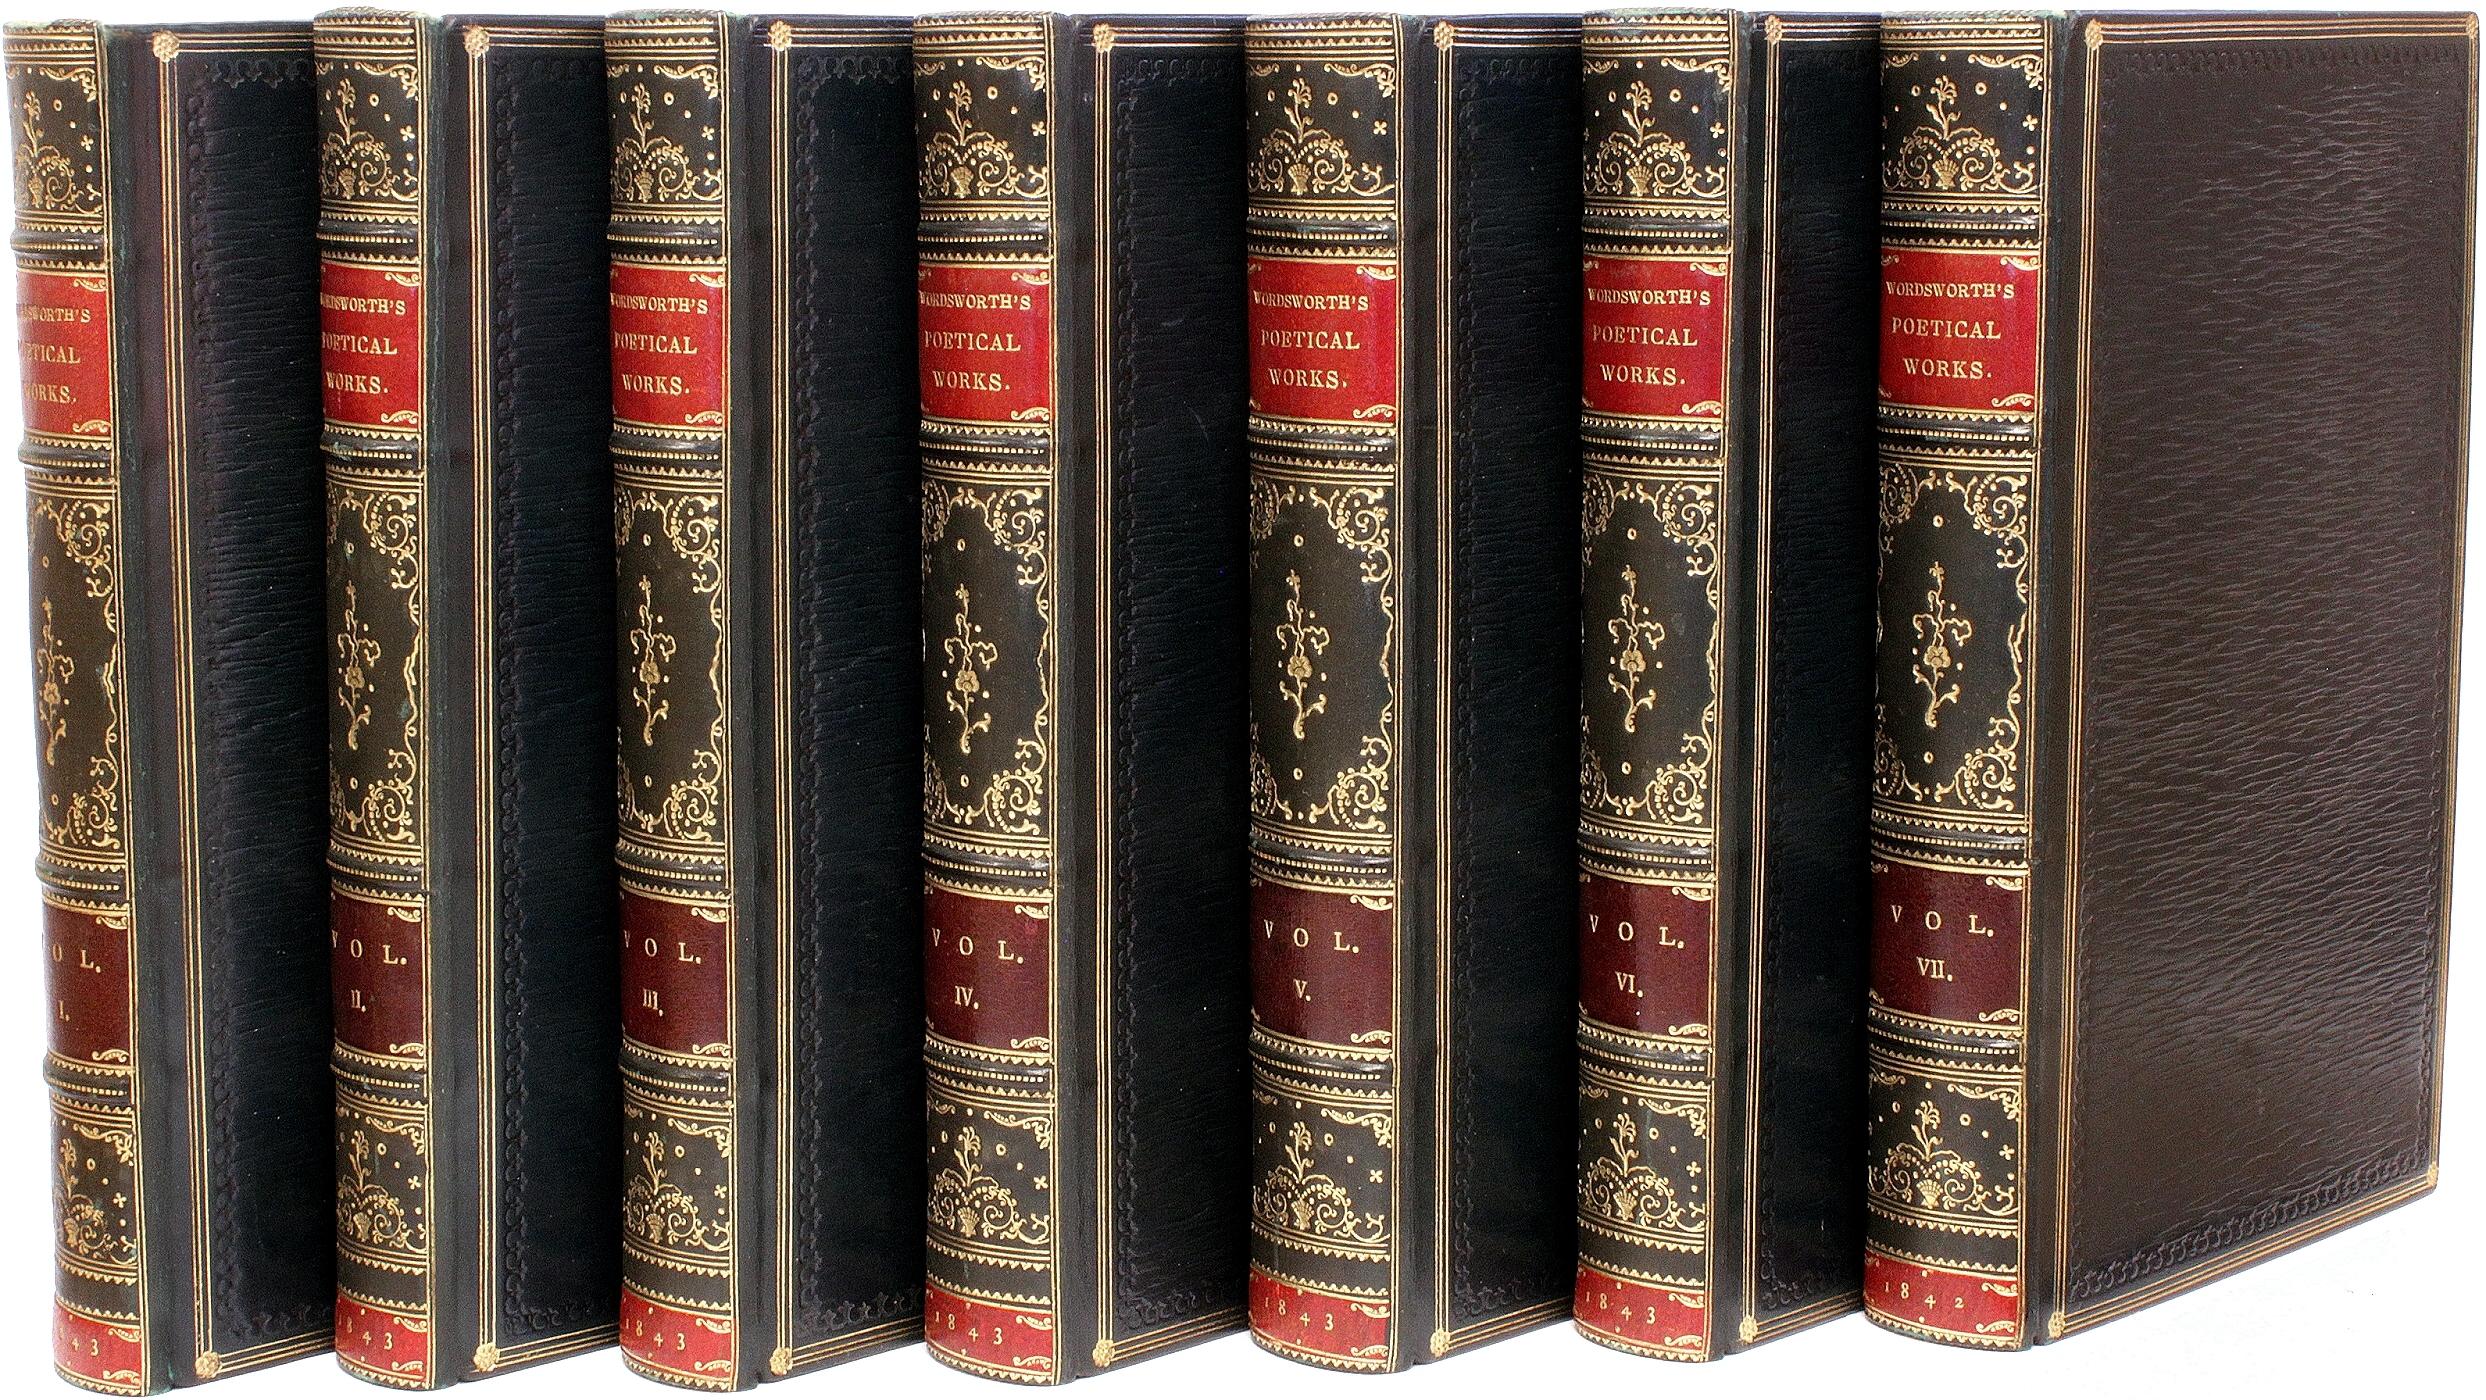 AUTEUR : WORDSWORTH, William. 

TITRE : Les œuvres poétiques de William Wordsworth.

ÉDITEUR : Londres : Edward Moxon, 1842-3.

DESCRIPTION : NOUVELLE ÉDITION. 7 volumes, 6-7/8